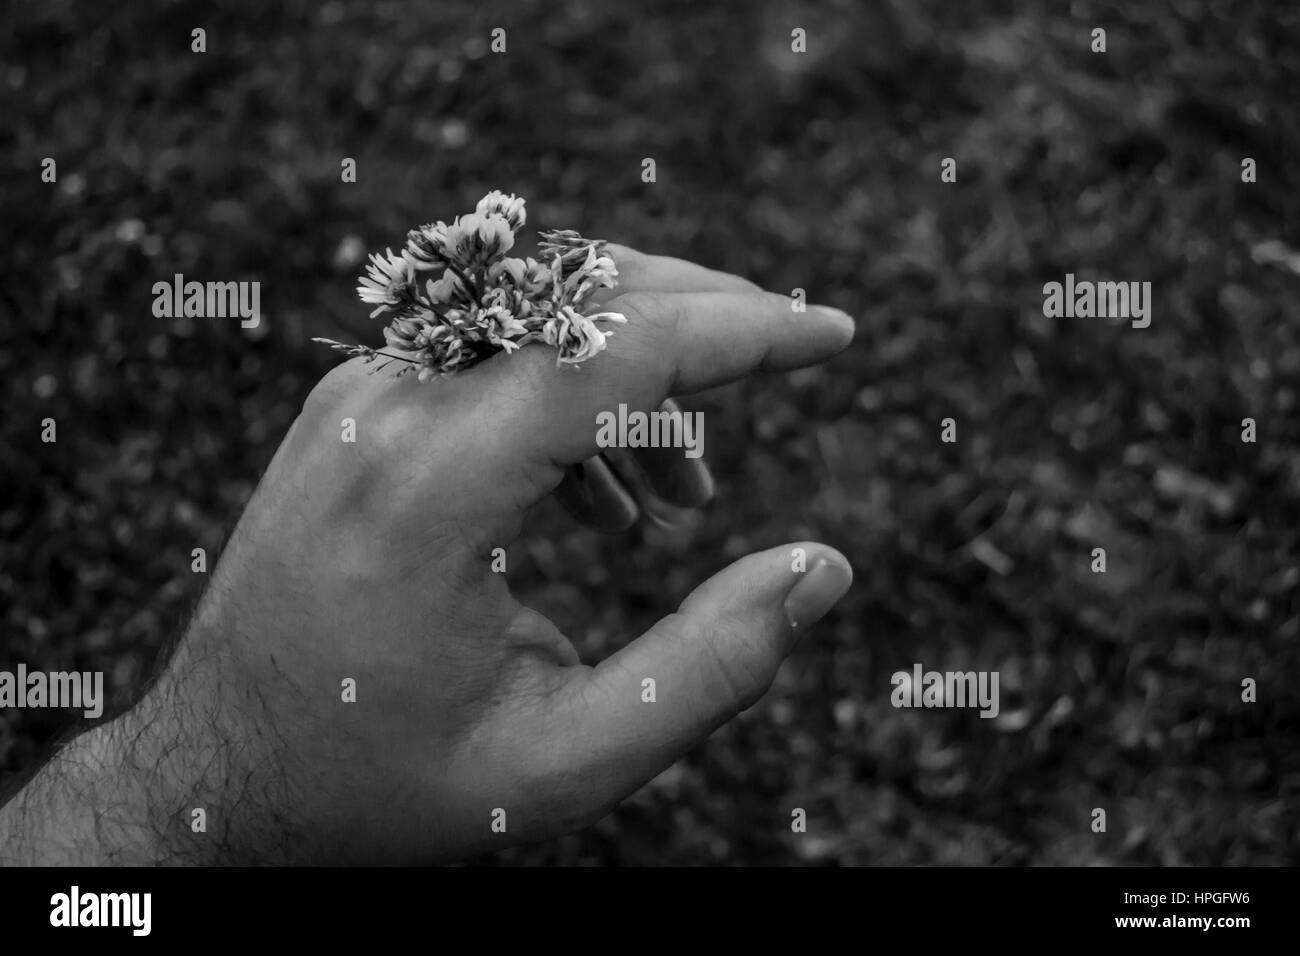 Gros plan d'une main tenant des fleurs blanches. Photo en noir et blanc avec un arrière-plan flou Banque D'Images